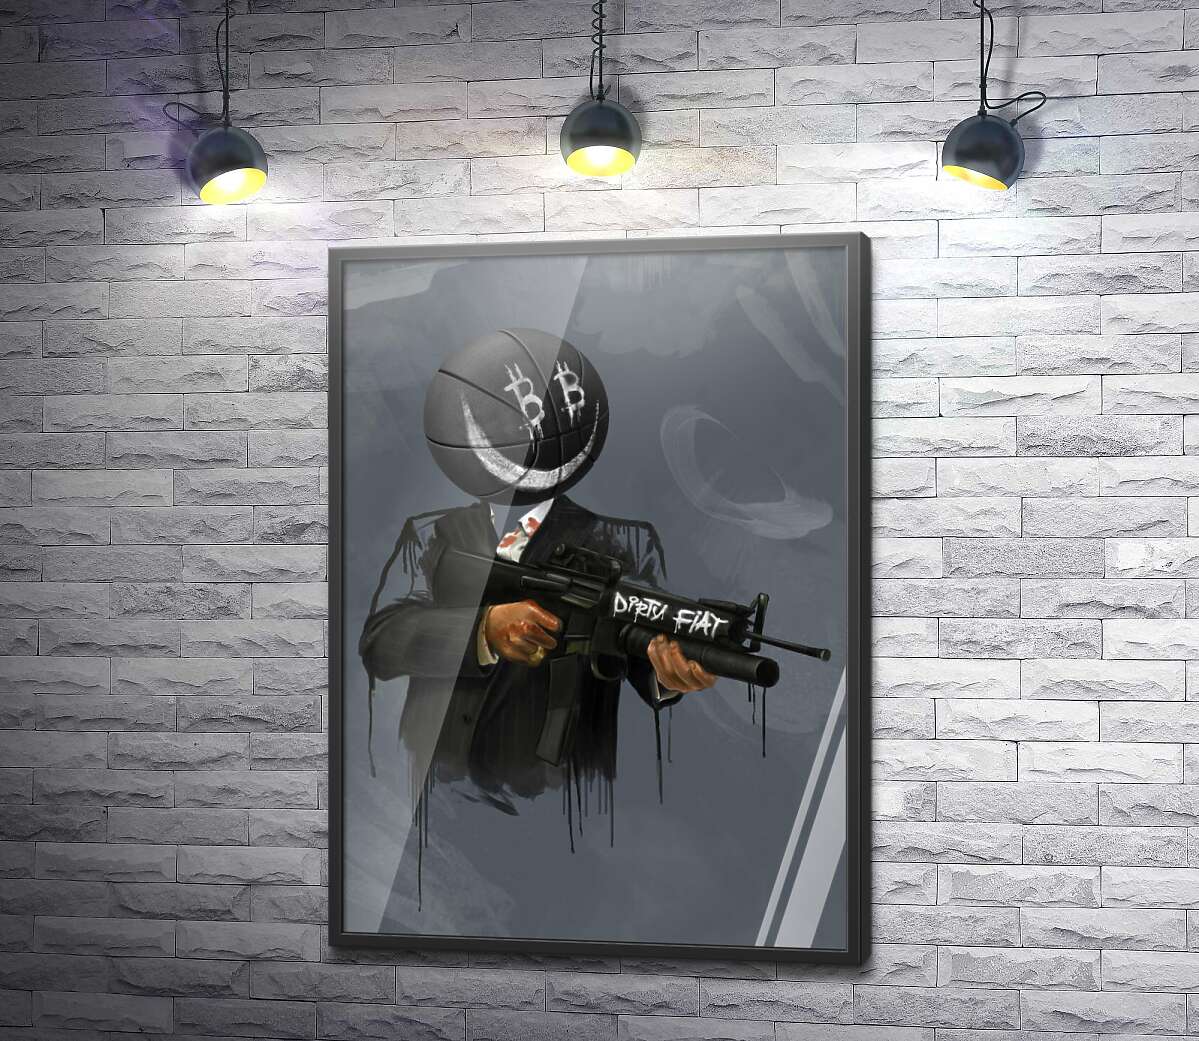 постер Брудний фіат: м'яч-гангстер зі зброєю (біткоін)